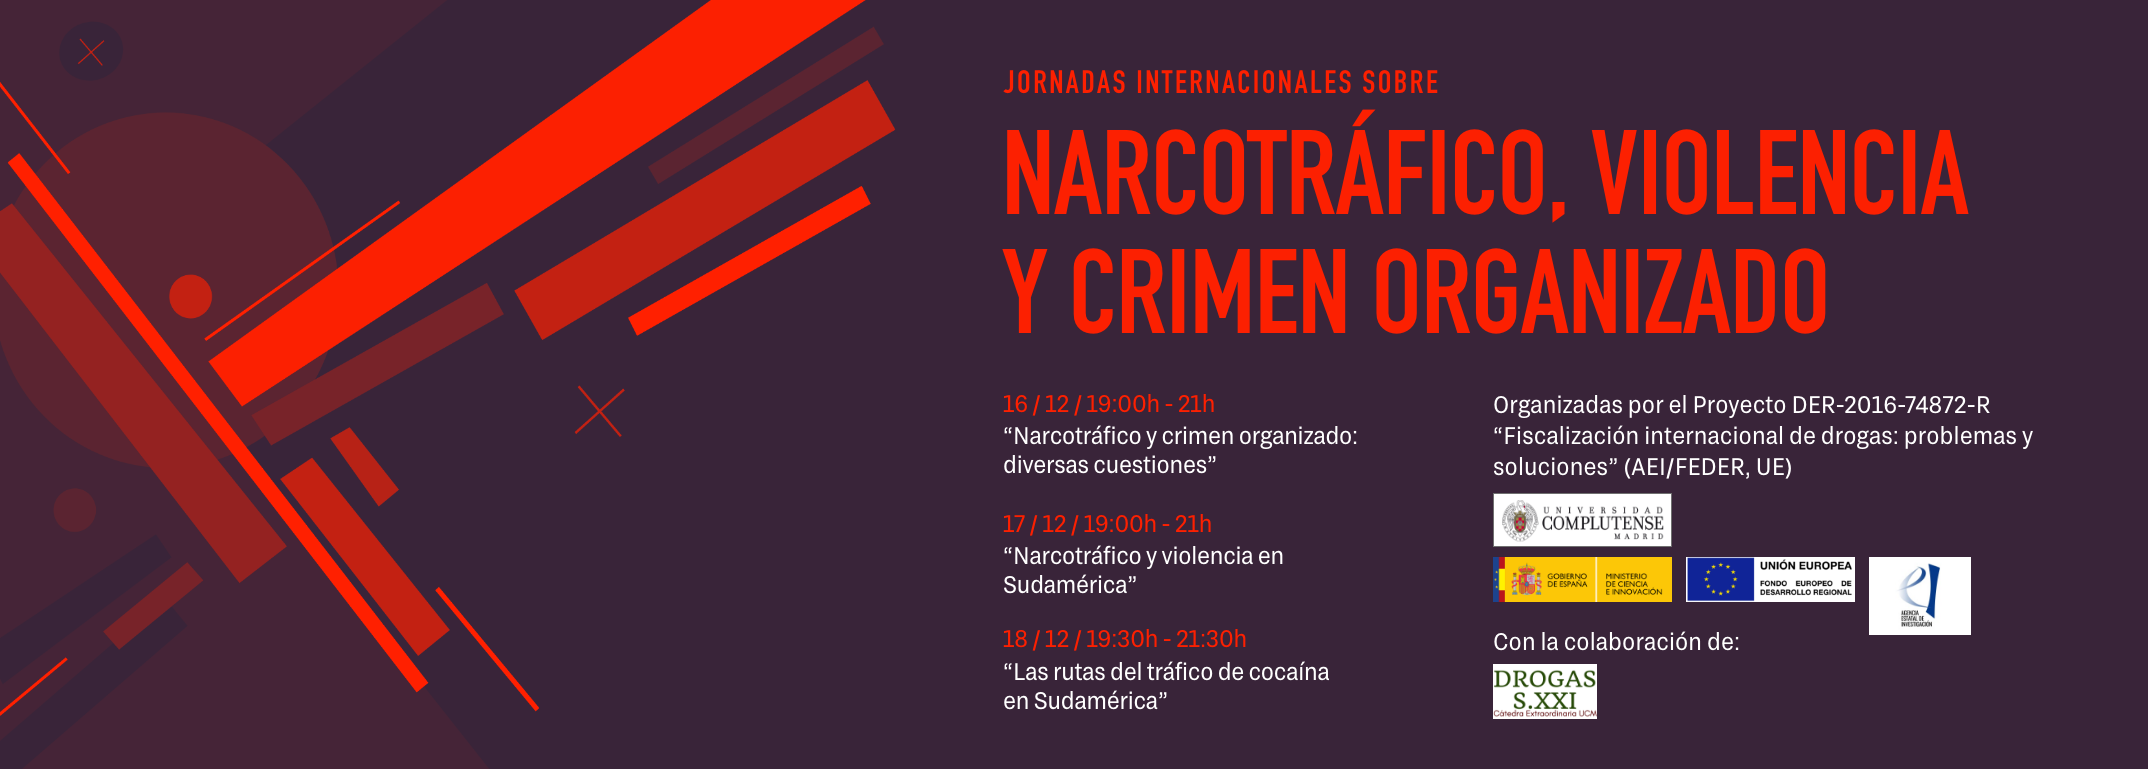 Jornadas Internacionales sobre Narcotráfico, Violencia y Crimen Organizado